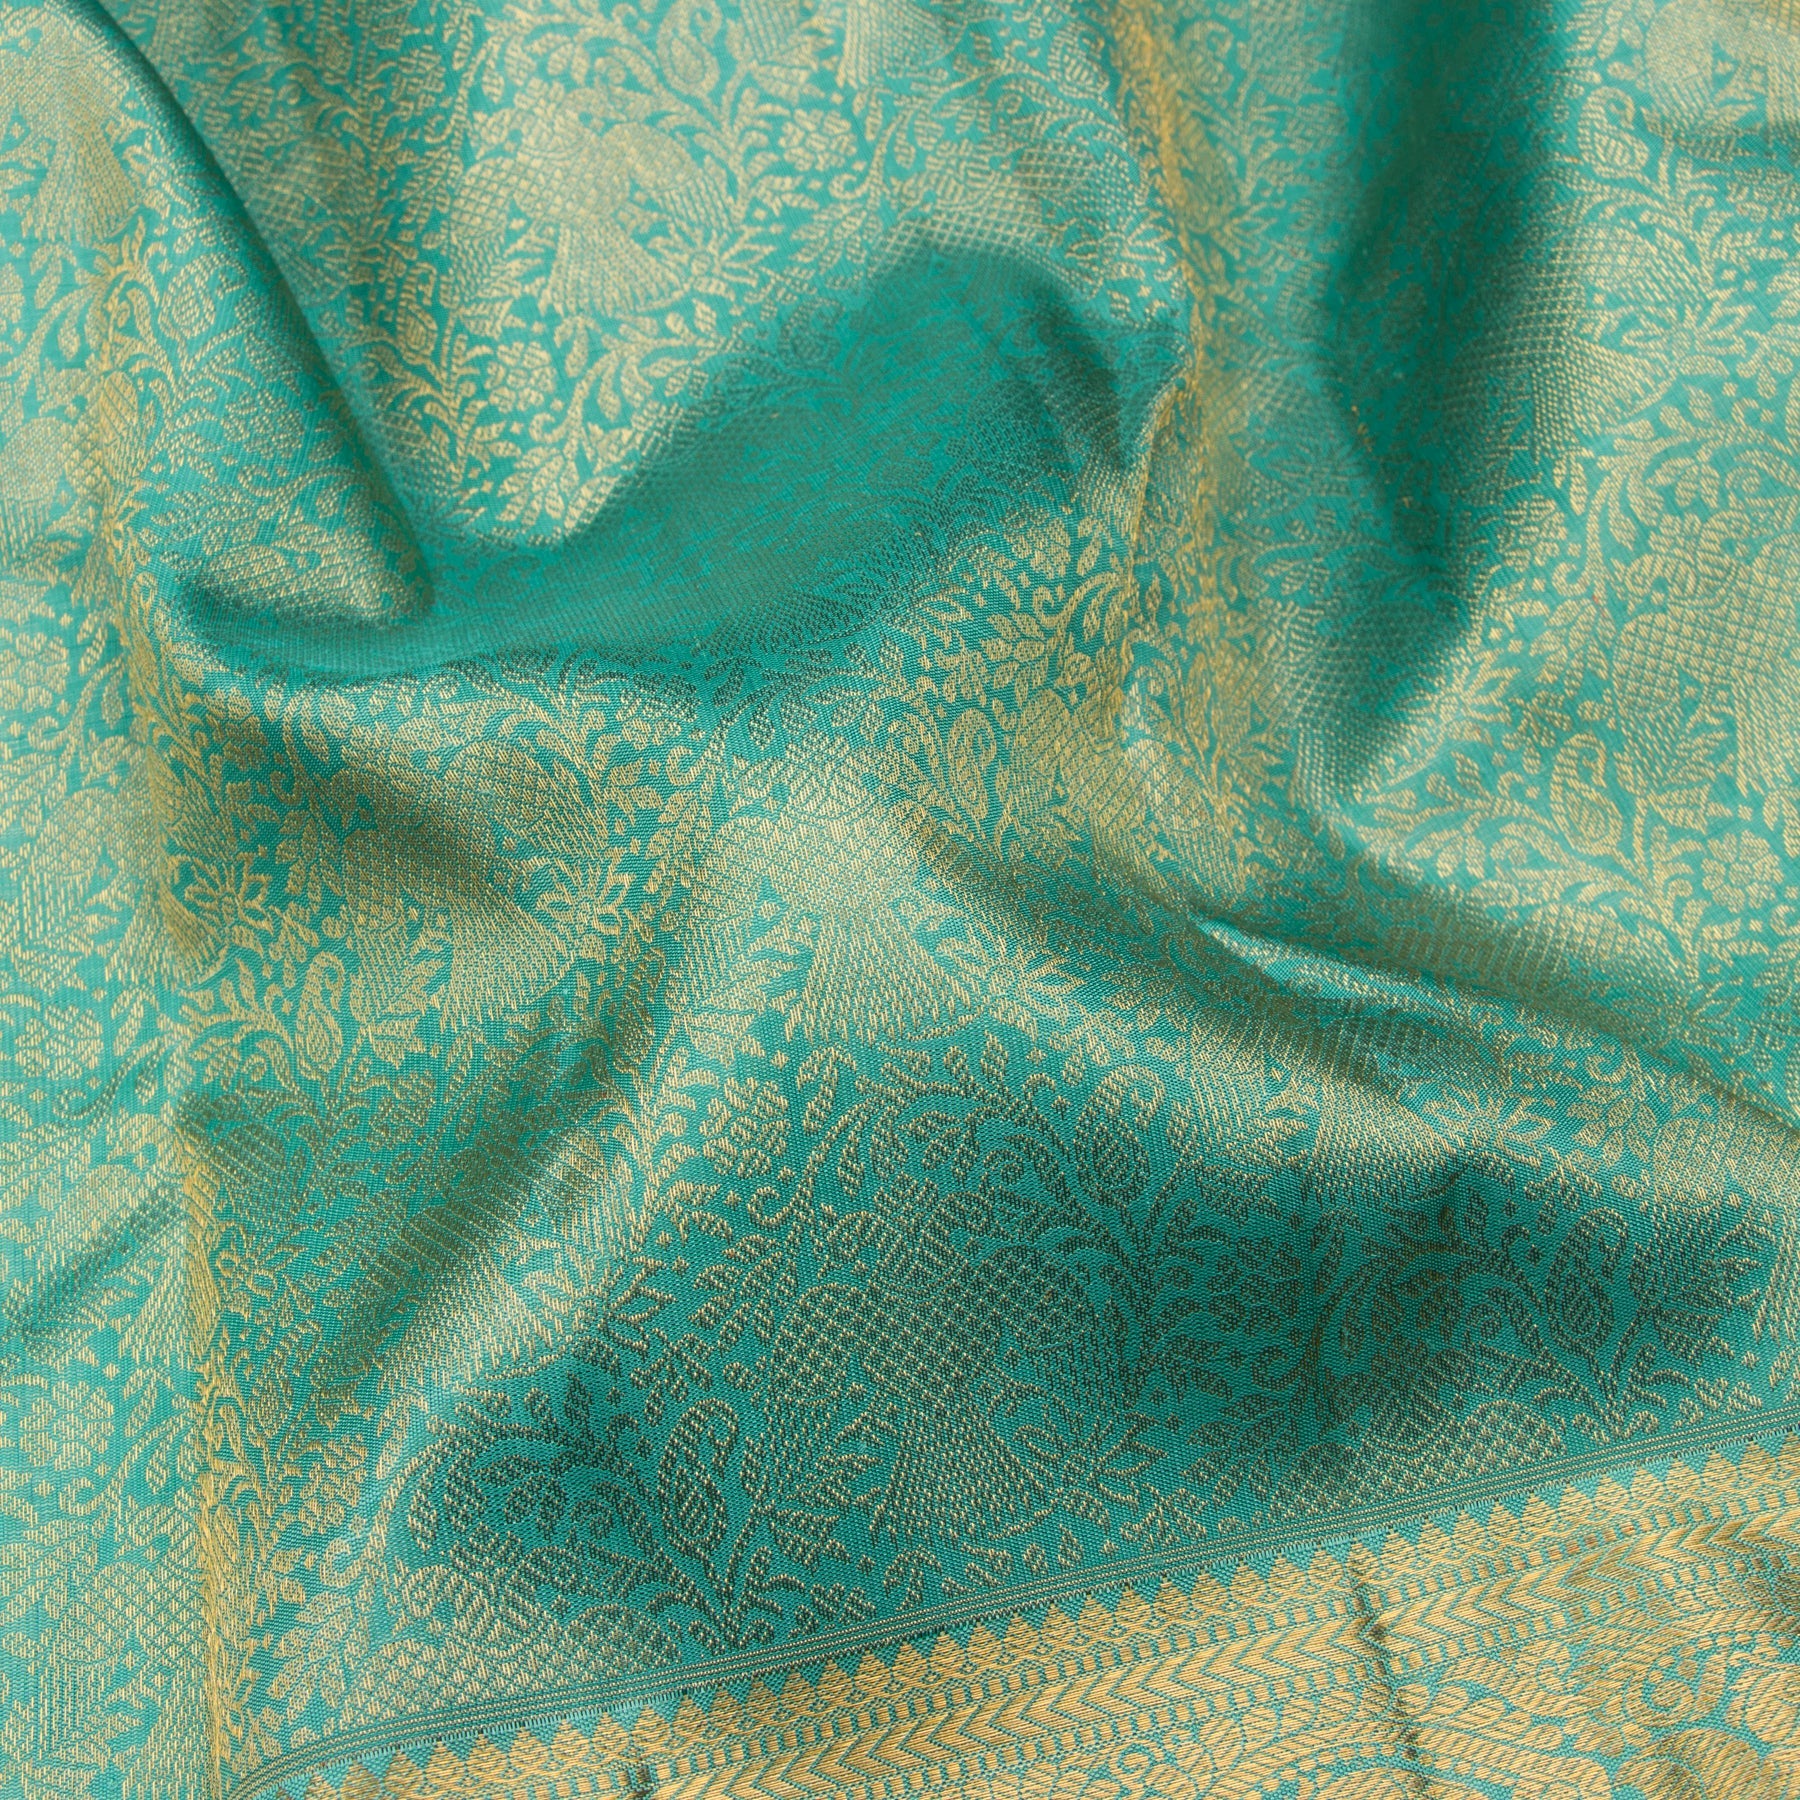 Kanakavalli Kanjivaram Silk Sari 23-110-HS001-08315 - Fabric View